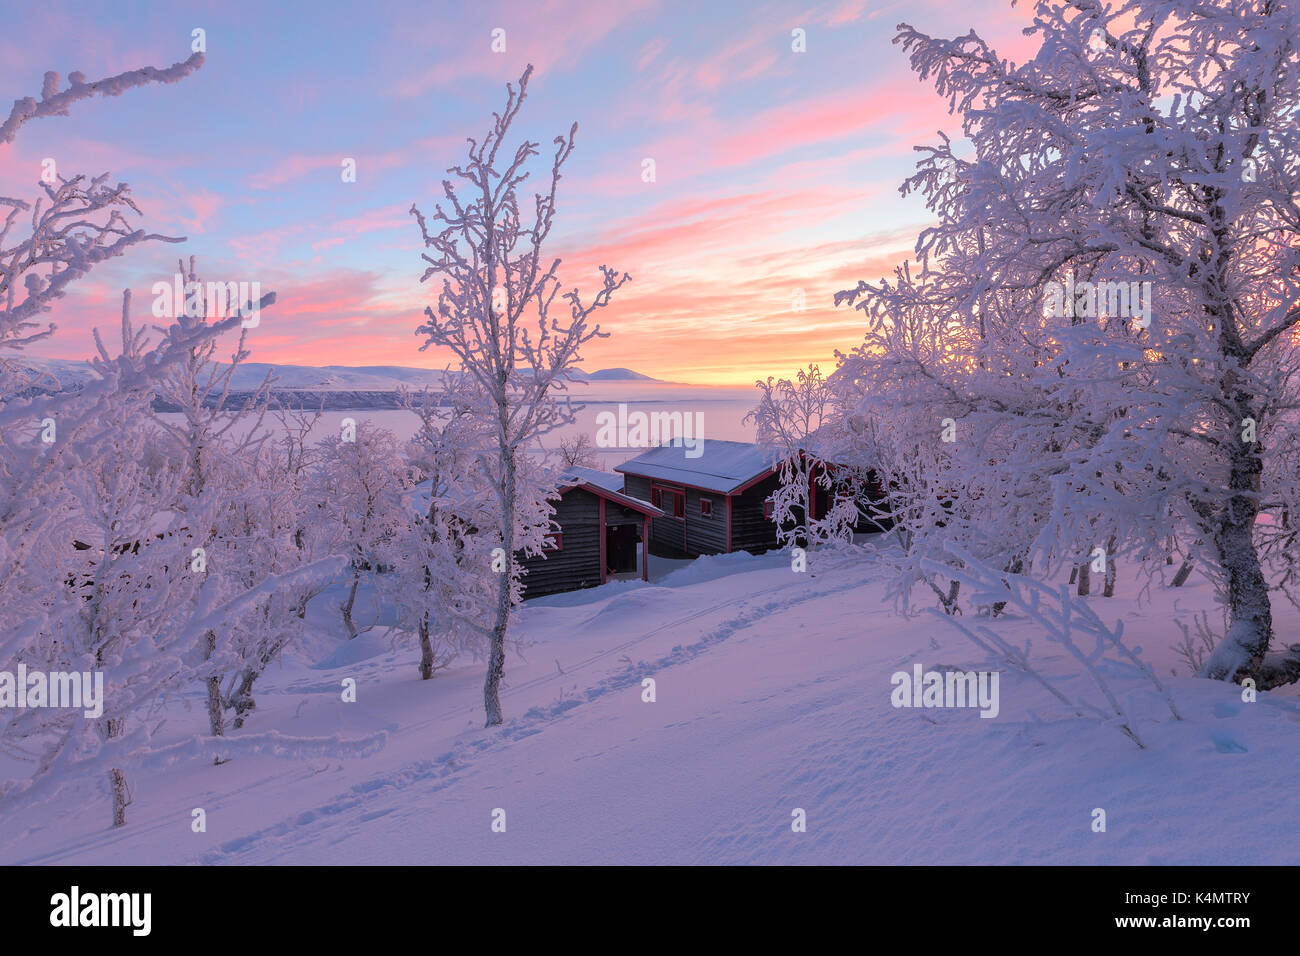 Alba luz ilumina una casa aislada en el bosque cubierto de nieve, bjorkliden, Ian norbottens, Suecia, Escandinavia, Europa Foto de stock